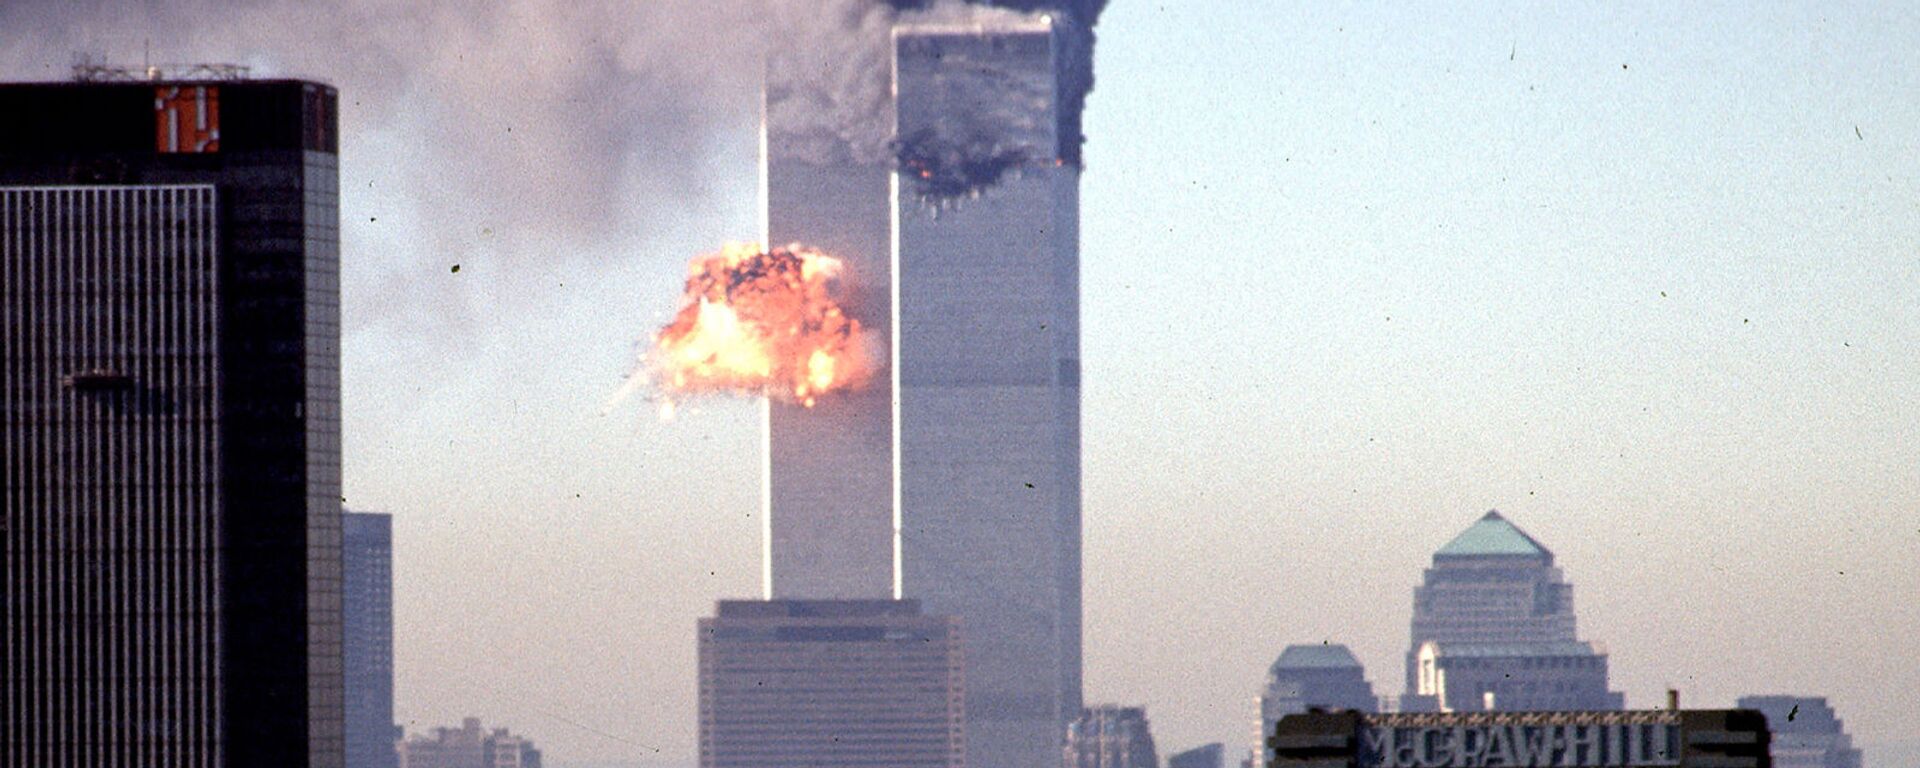 Всемирный торговый центр во время взрыва (11 сентября 2001. Нью-Йорк - Sputnik Արմենիա, 1920, 11.09.2021